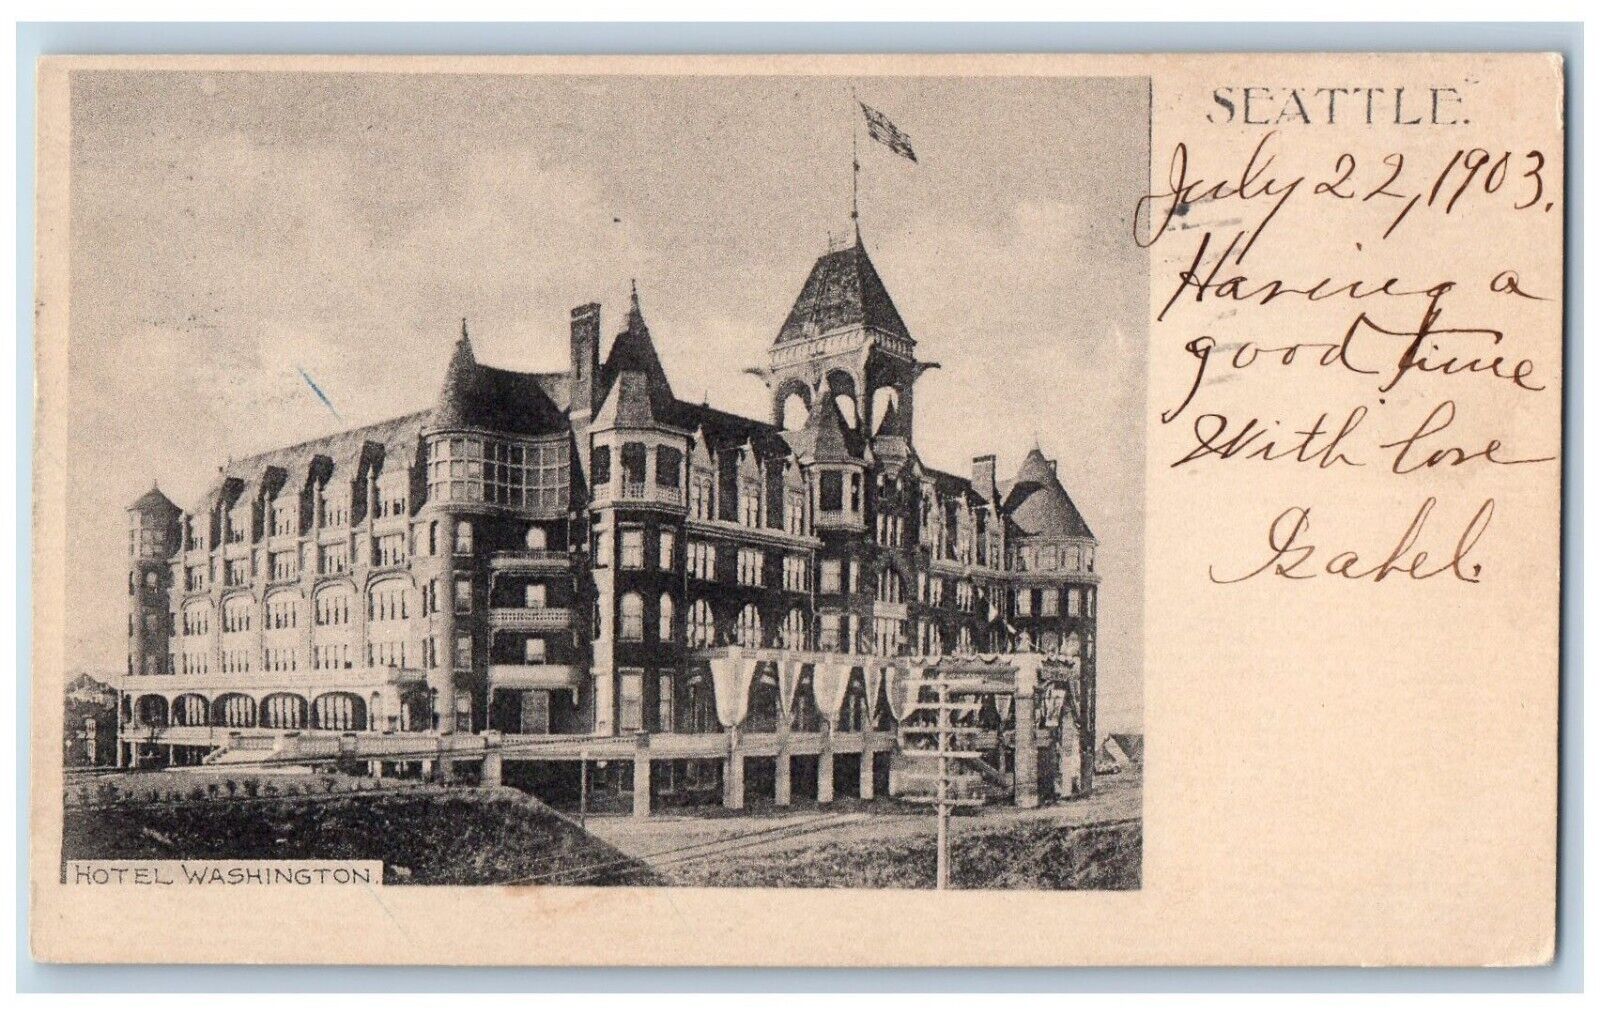 Seattle Washington Postcard Hotel Exterior View Building c1903 Vintage Antique